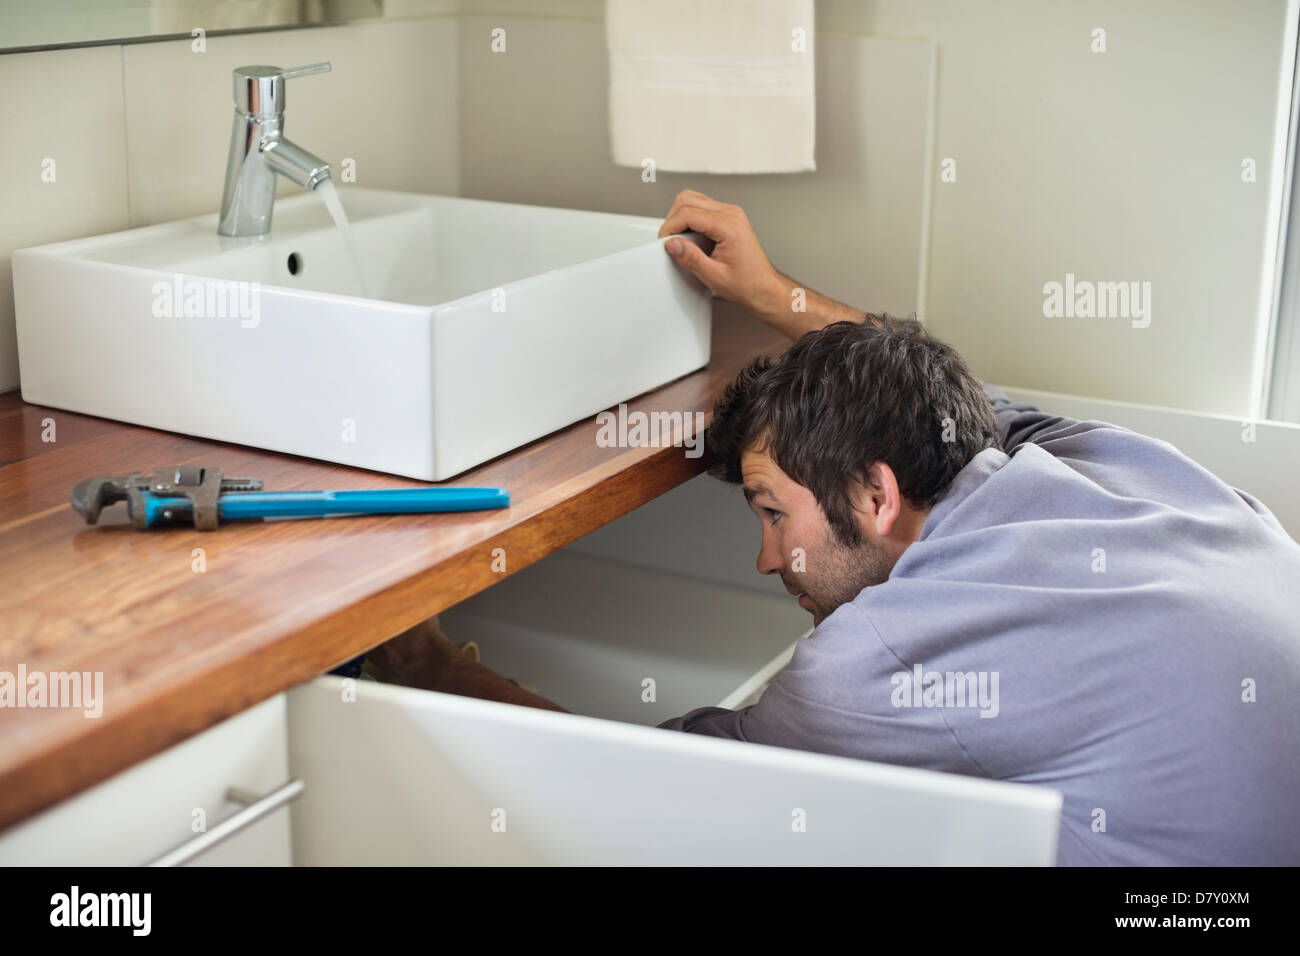 Plumber working under kitchen sink Stock Photo